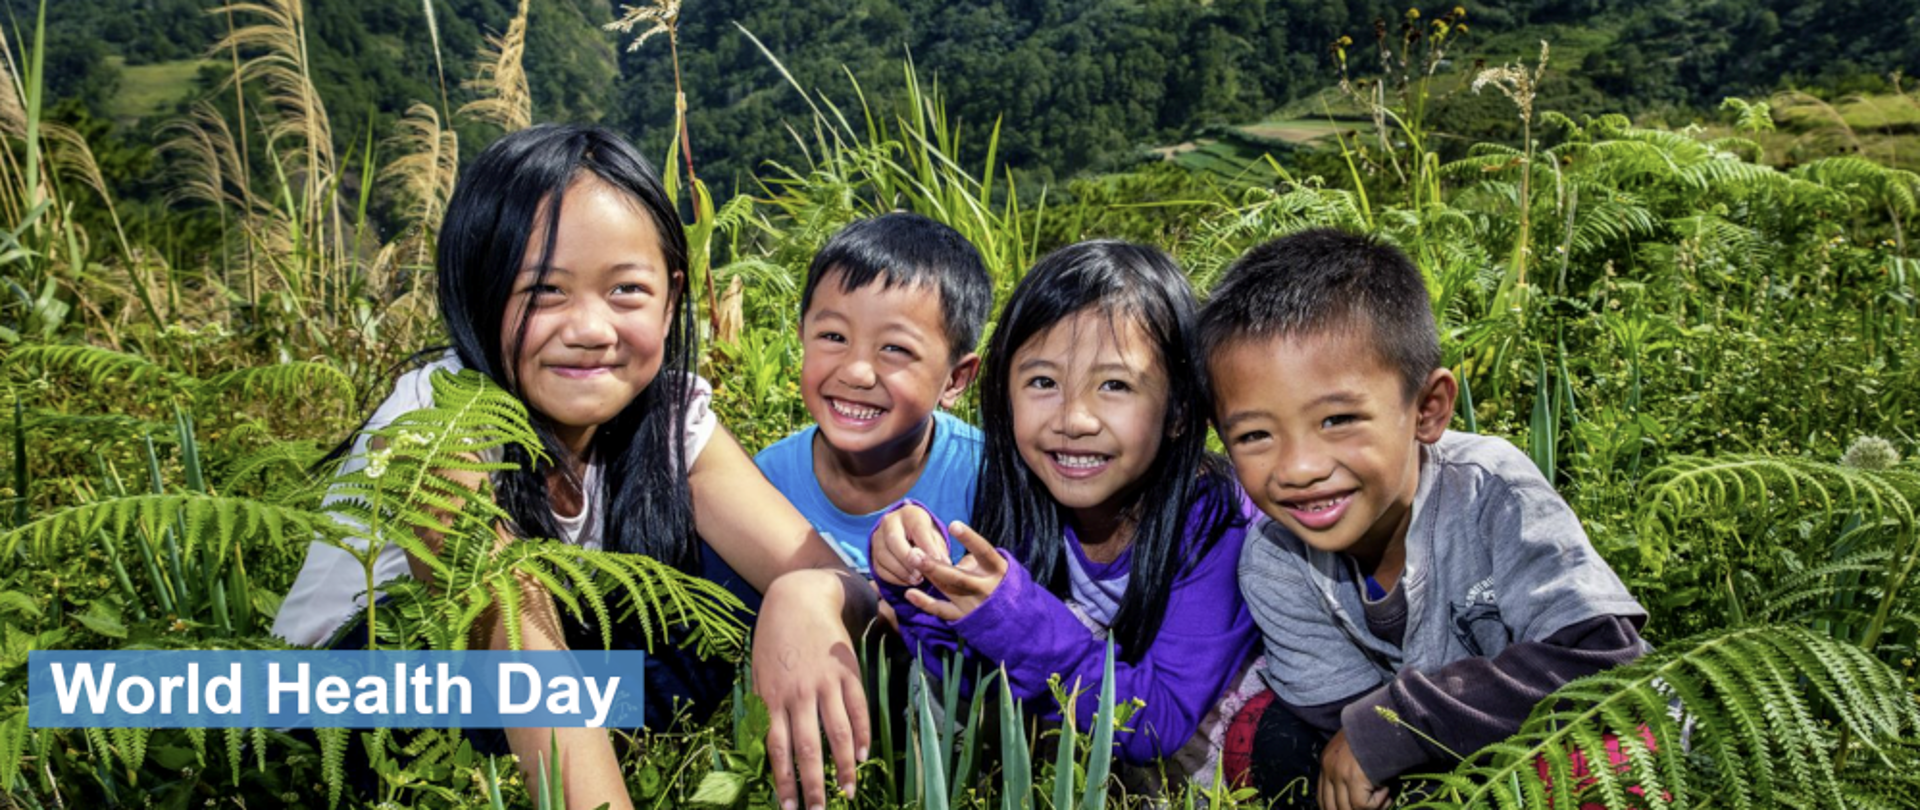 Czwórka uśmiechających się dzieci siedząca w trawie - po lewej napis "World Health Day"